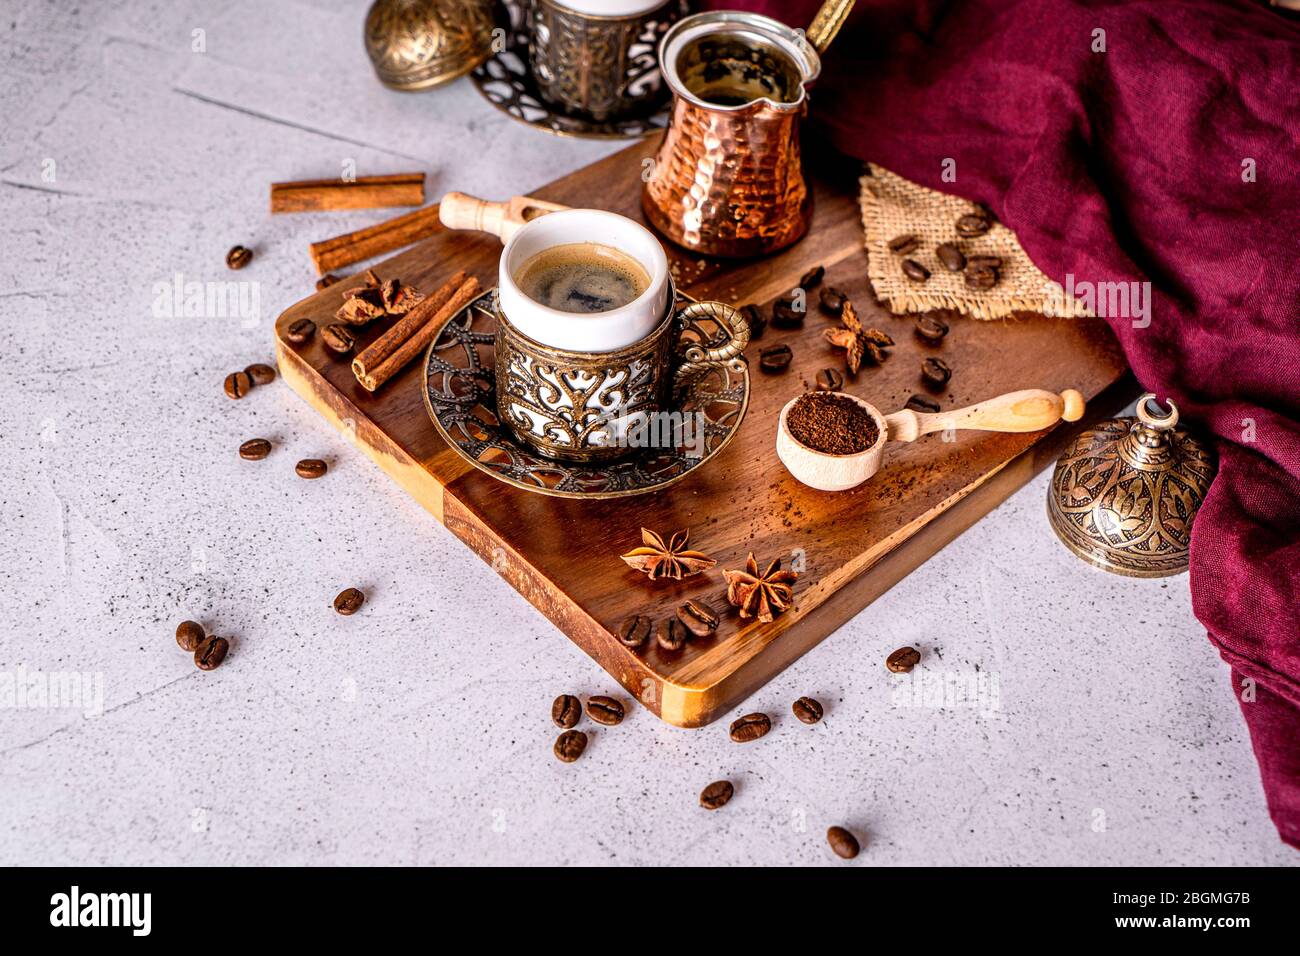 Detalle de una taza de café turca, granos de café y polvo molido sobre un fondo blanco con espacio para texto Foto de stock